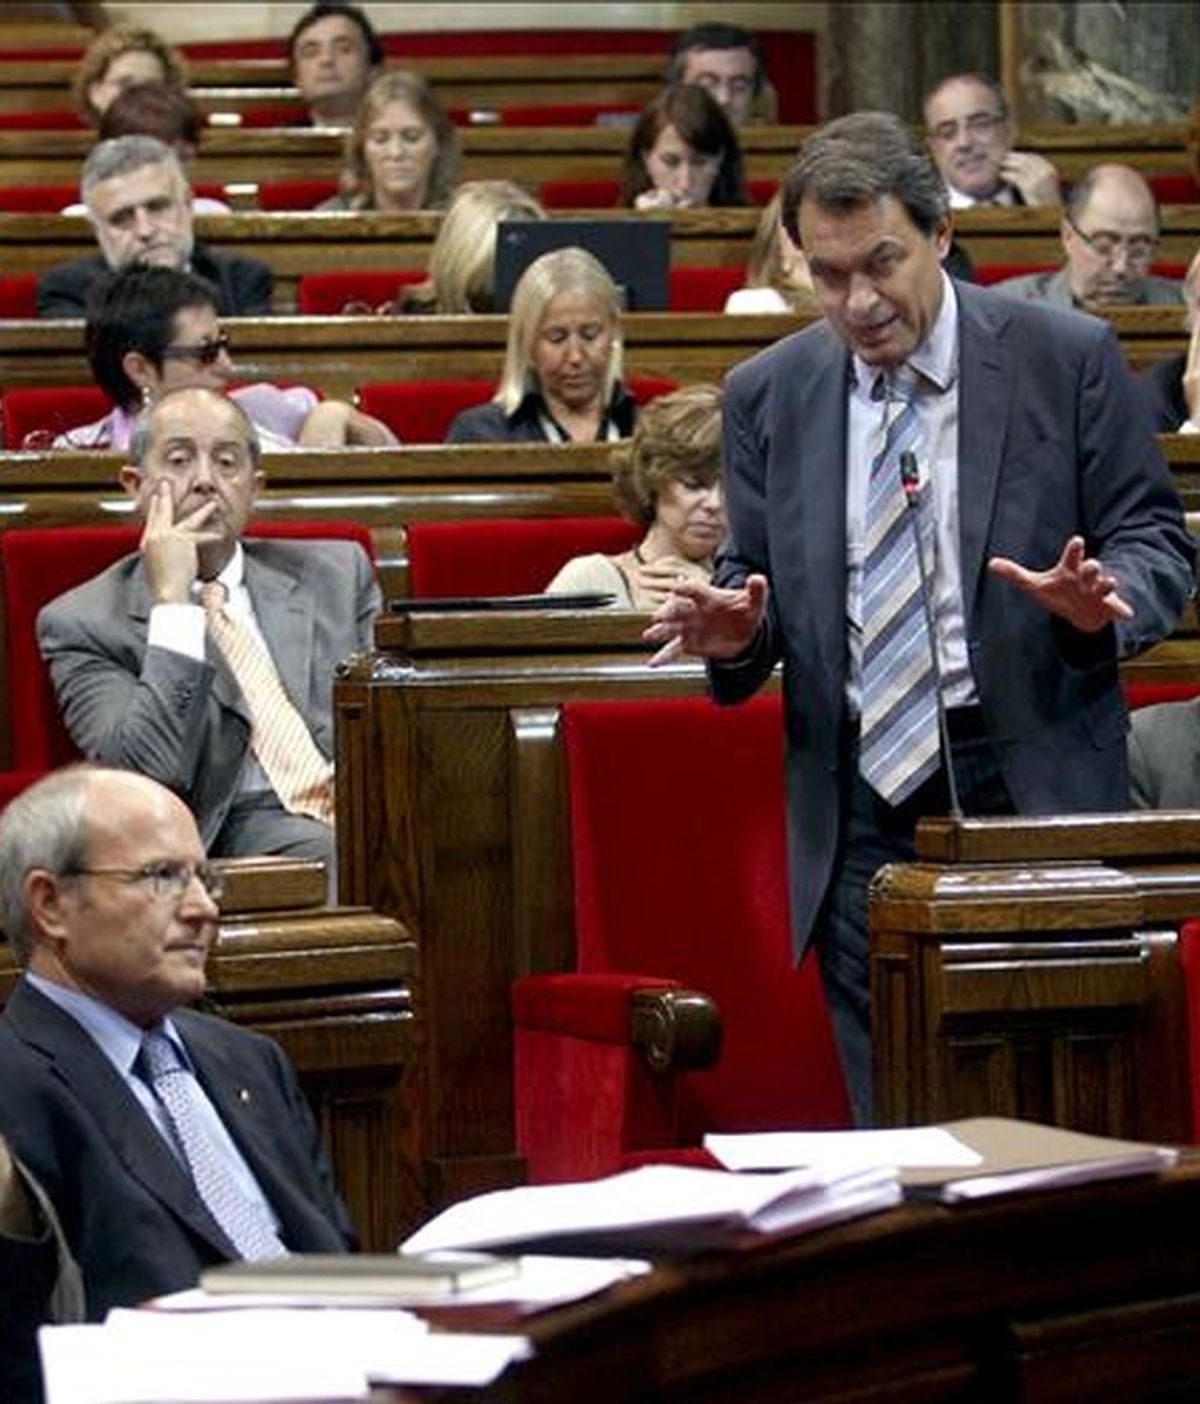 El presidente de la Generalitat, José Montilla (i), y el líder de CiU, Artur Mas (d), durante una sesión de control en el parlamento catalán. EFE/Archivo